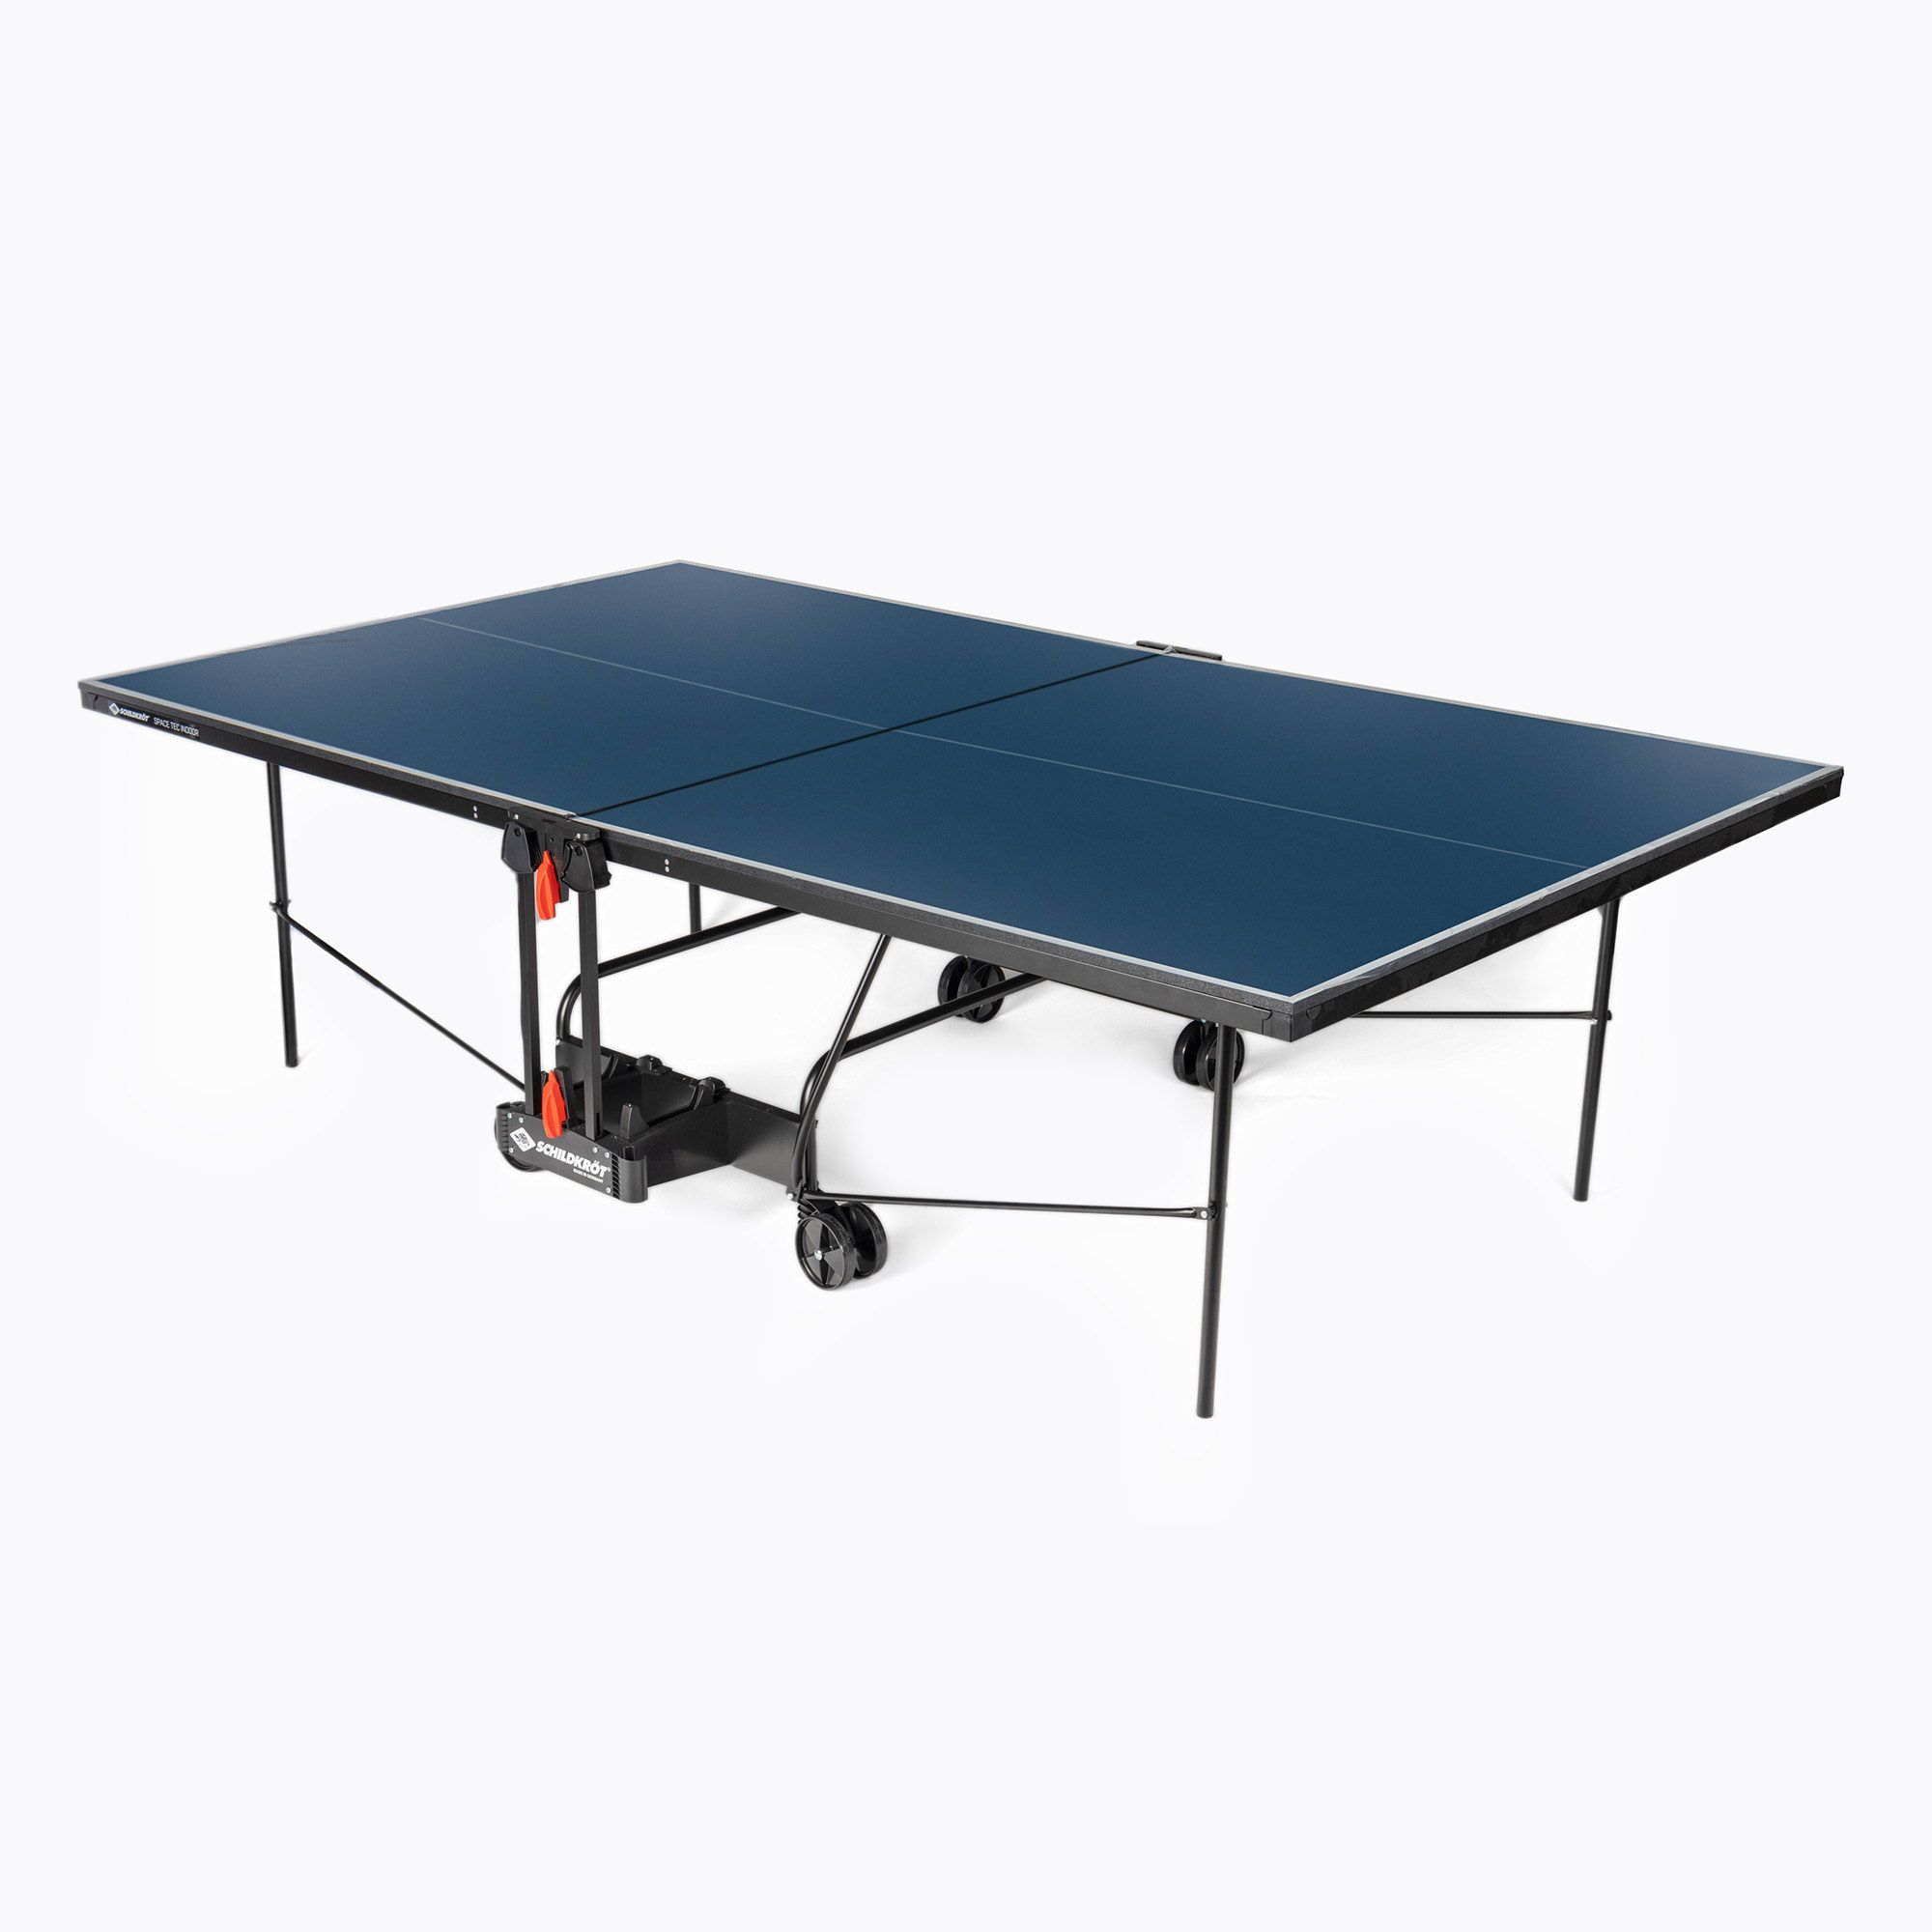 tennis Schildkröt Indoor table SpaceTec table blue 838546